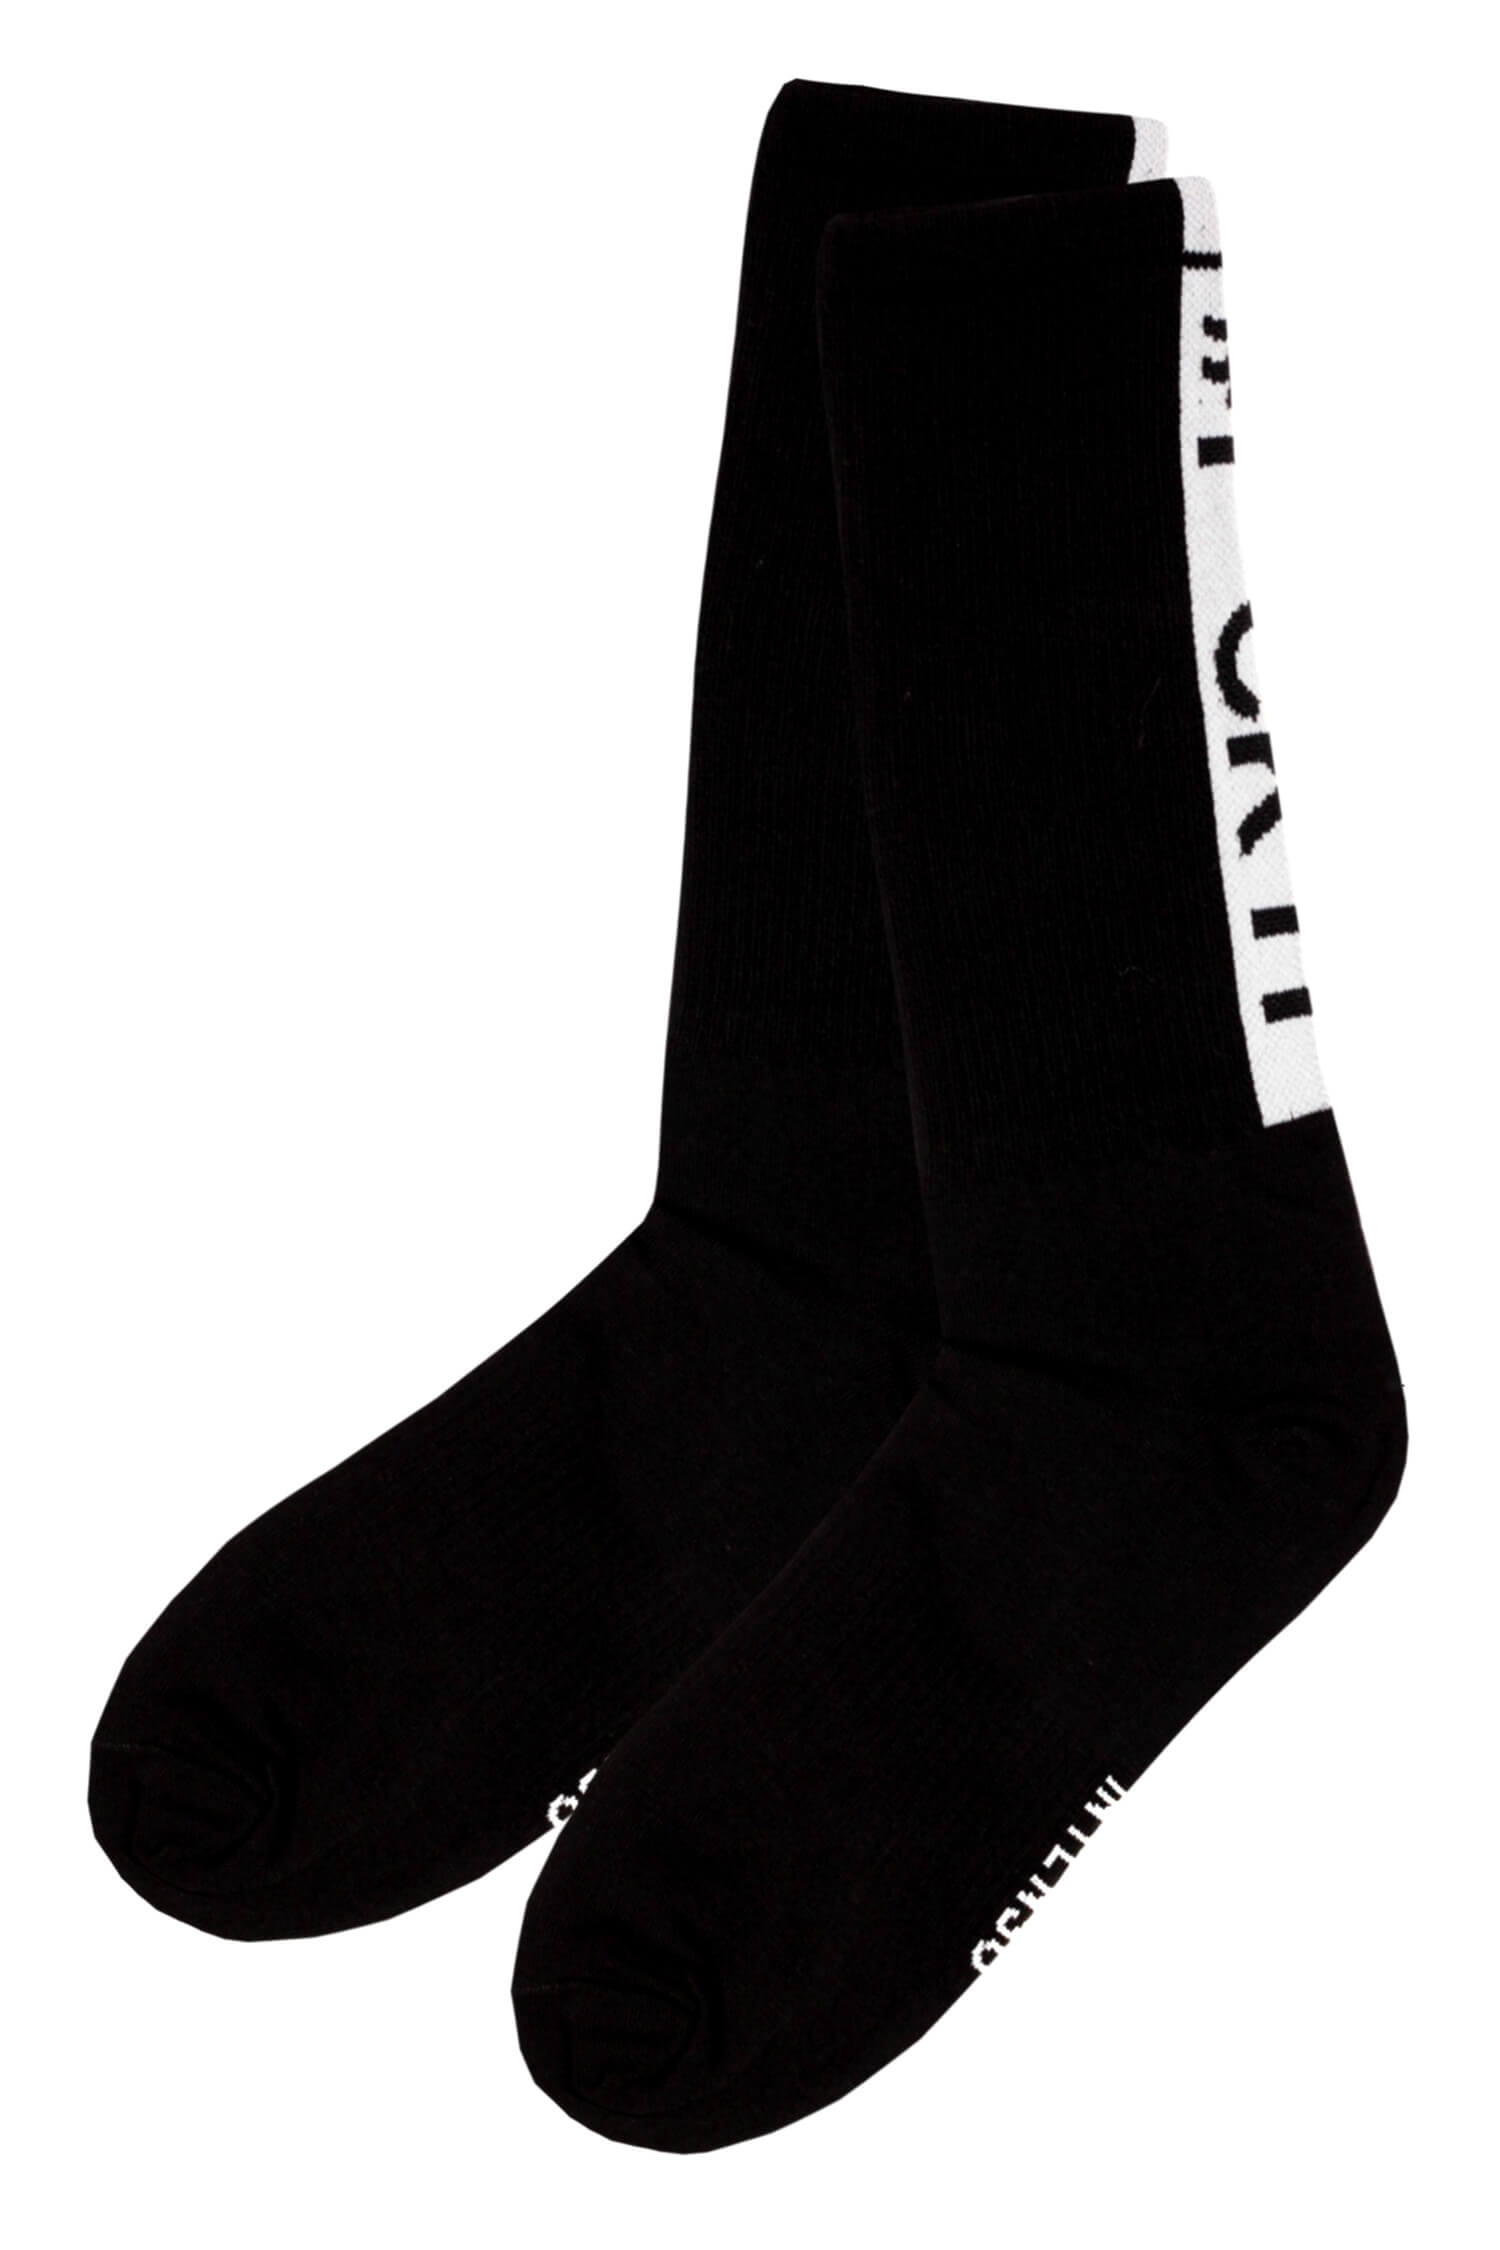 Fck it Intenso tmavé vysoké ponožky bavlna 36-40 černá